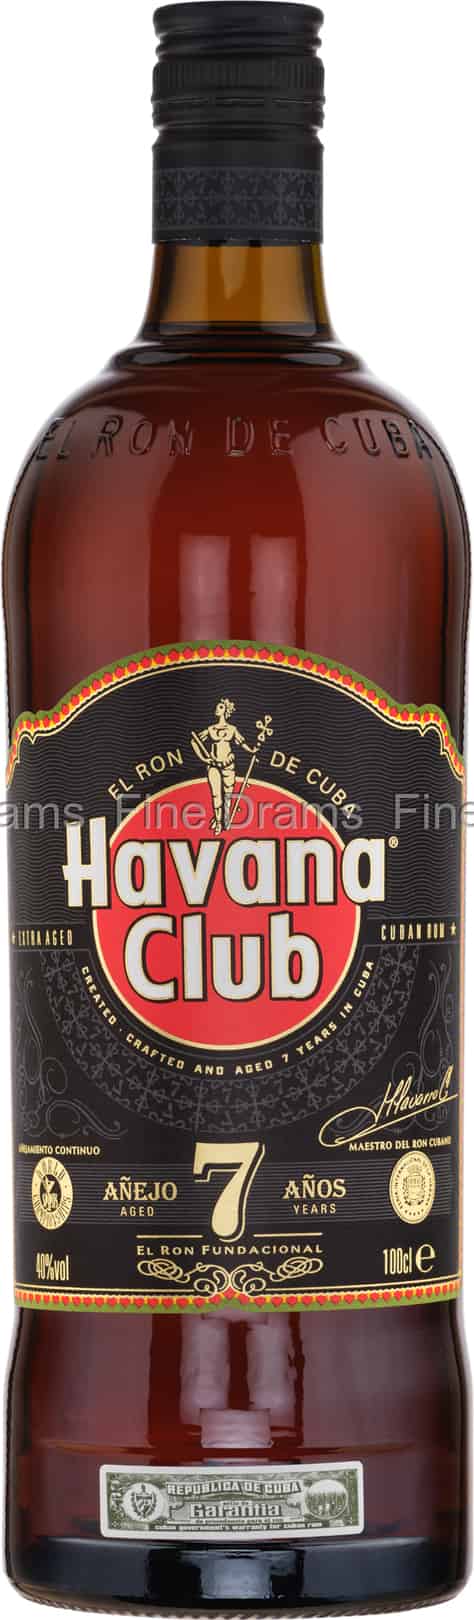 Old Havana Rum Year Club Liter) 7 (1